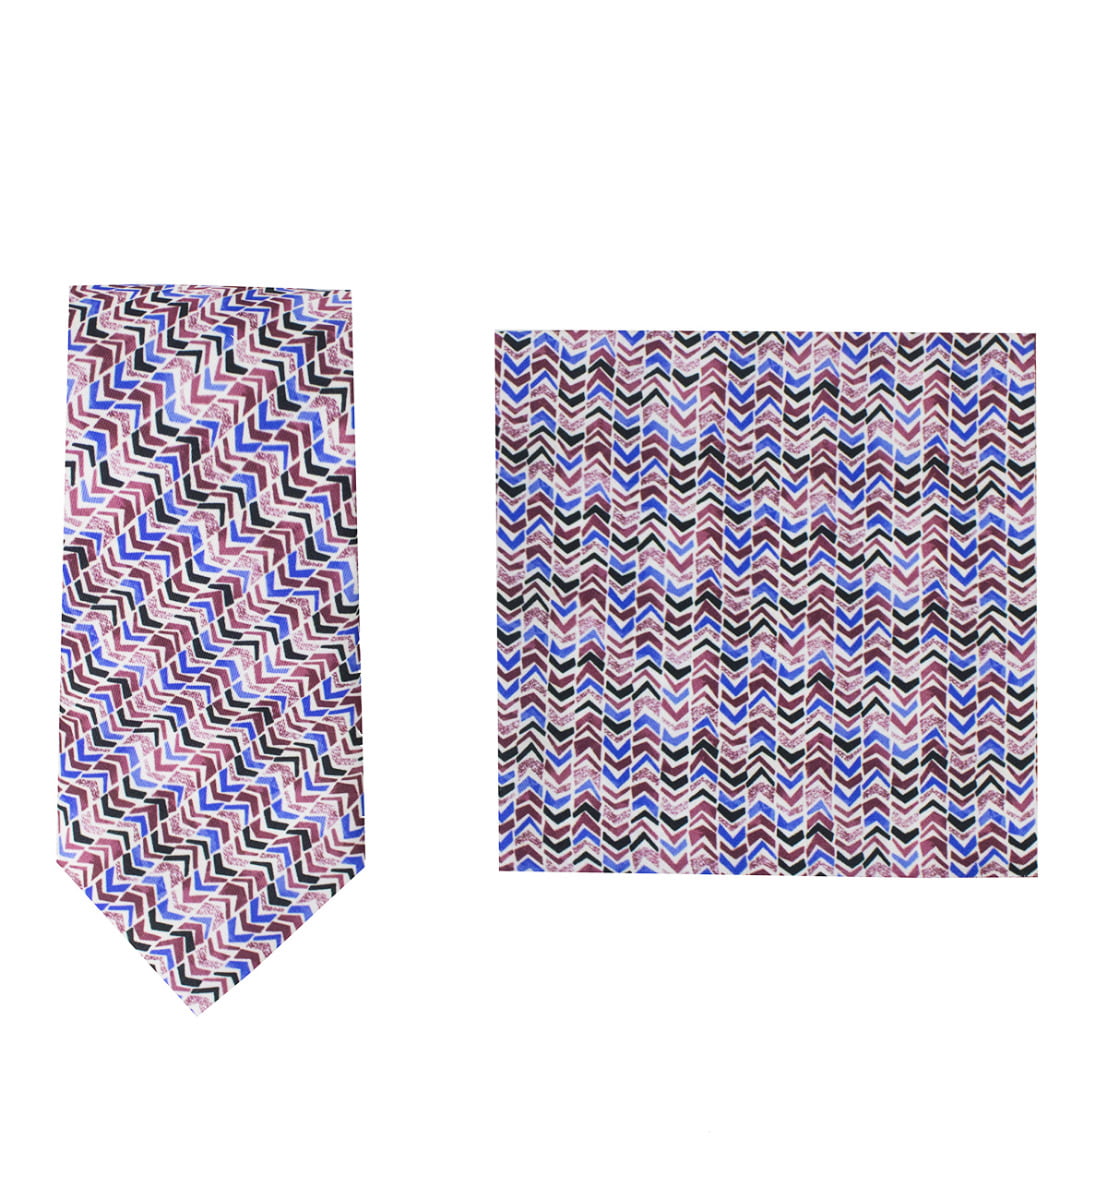 Cravatta uomo multicolor fantasia frecce compresa di pochette abbinata